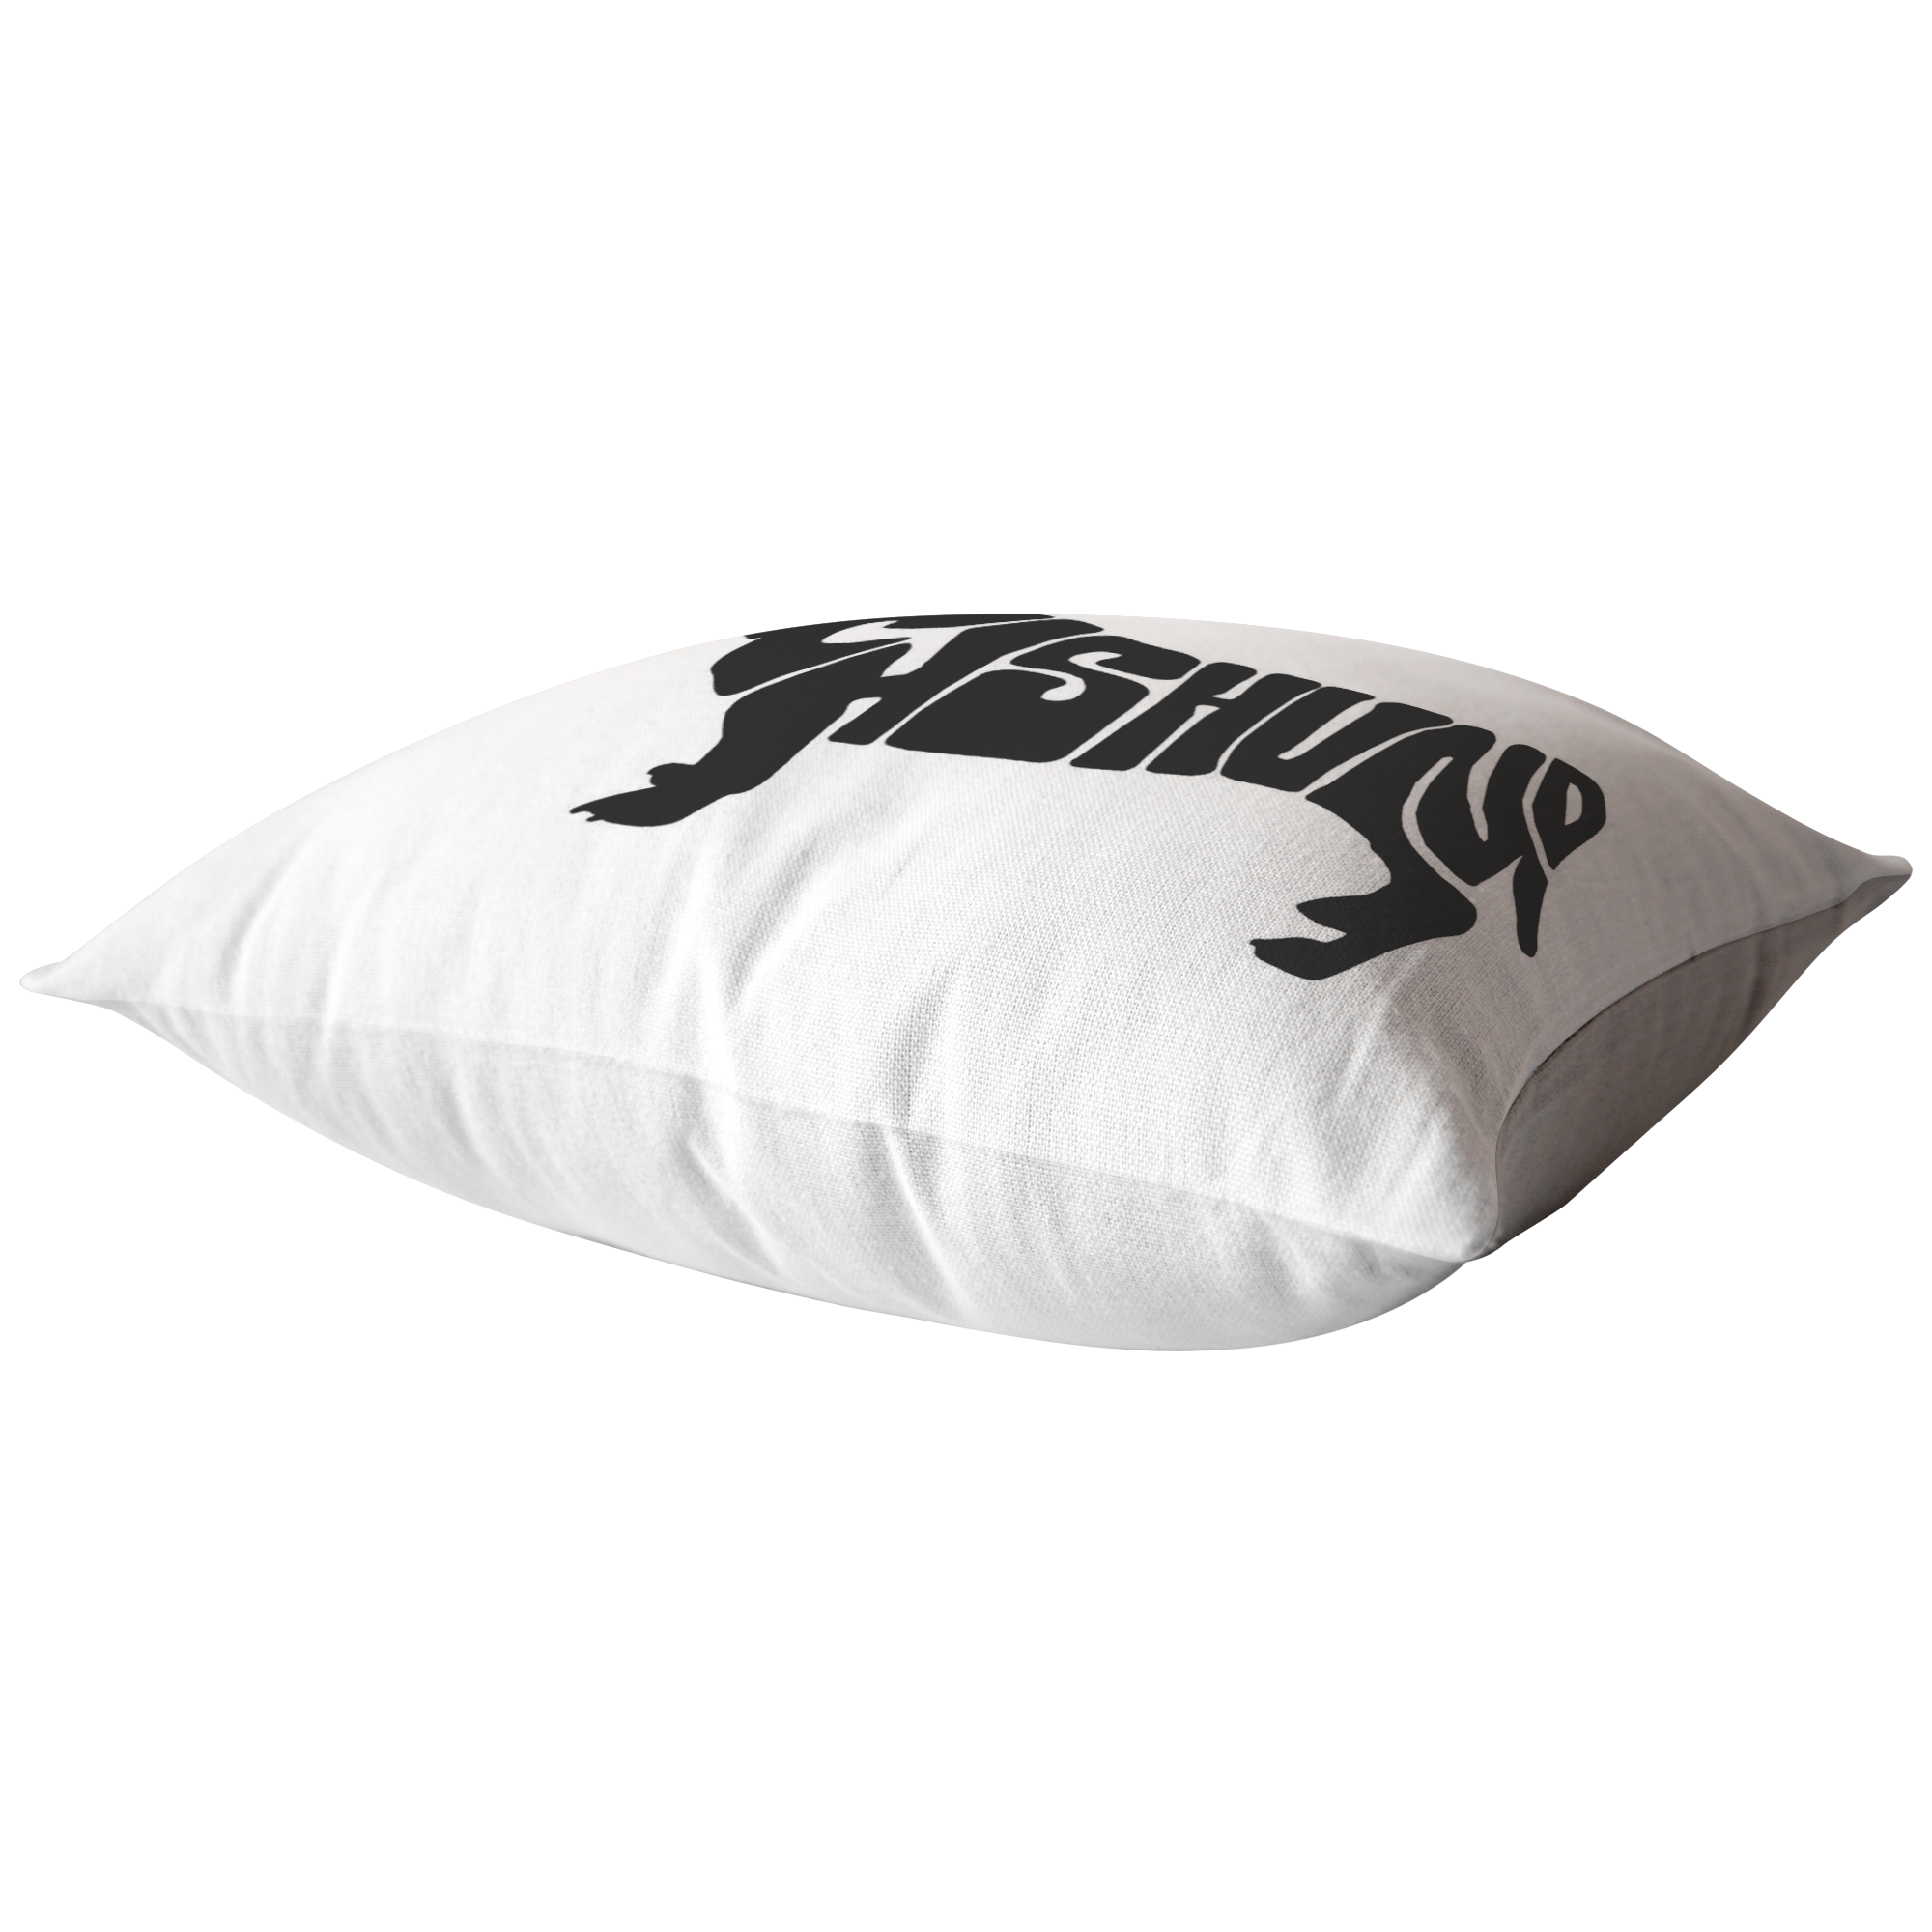 Dachshund - Pillow